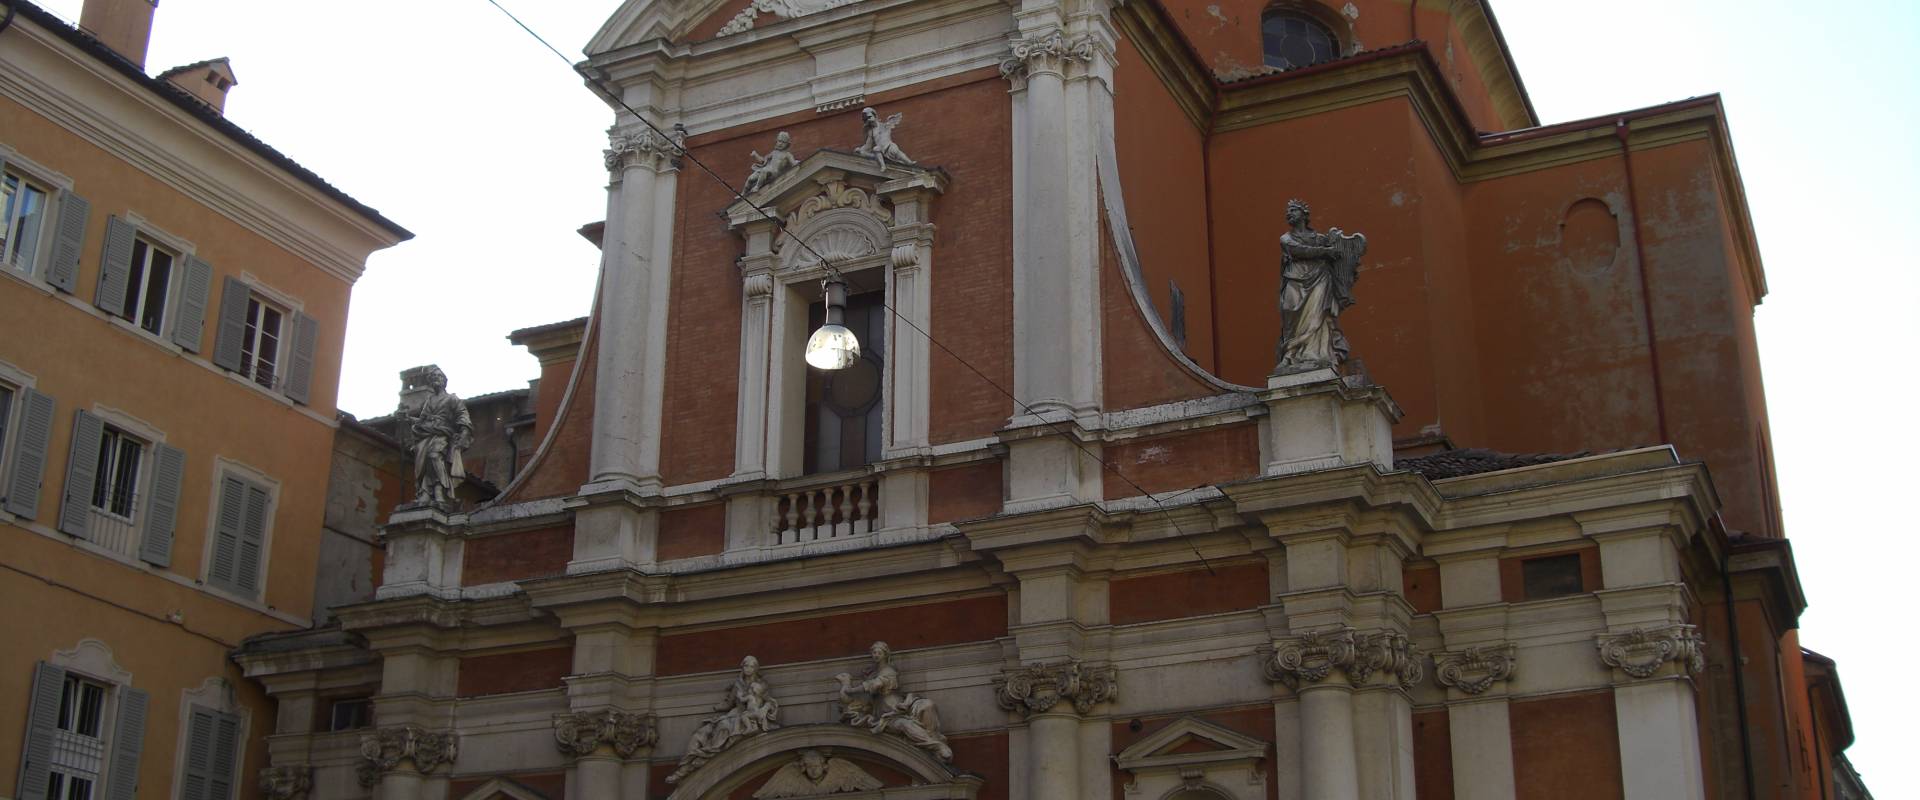 Chiesa di San Giorgio a Modena vista dal basso foto di Matteolel